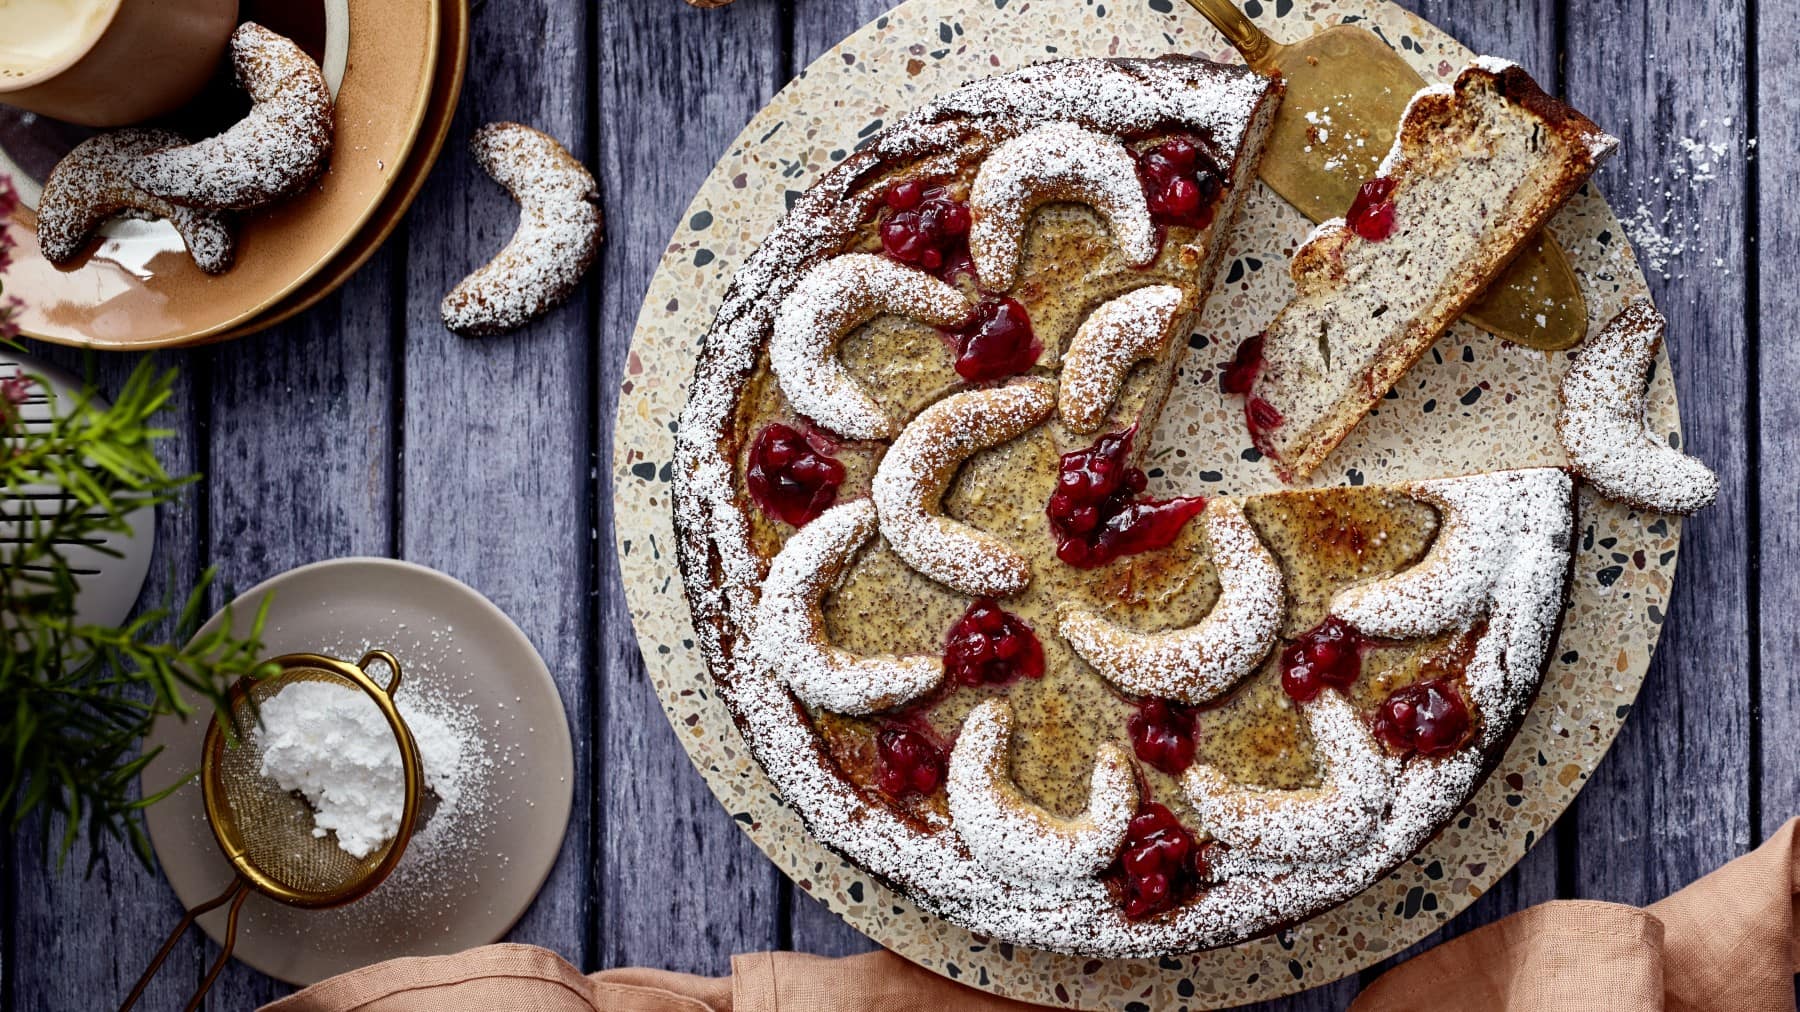 Ein Vanillekipferl-Kuchen auf einem Mosaik-Servierteller auf einem hölzernen Hintergrund. Links ein Teller mit Vanillekipferl und links unten ein kleinen Sieb mit Puderzucker.